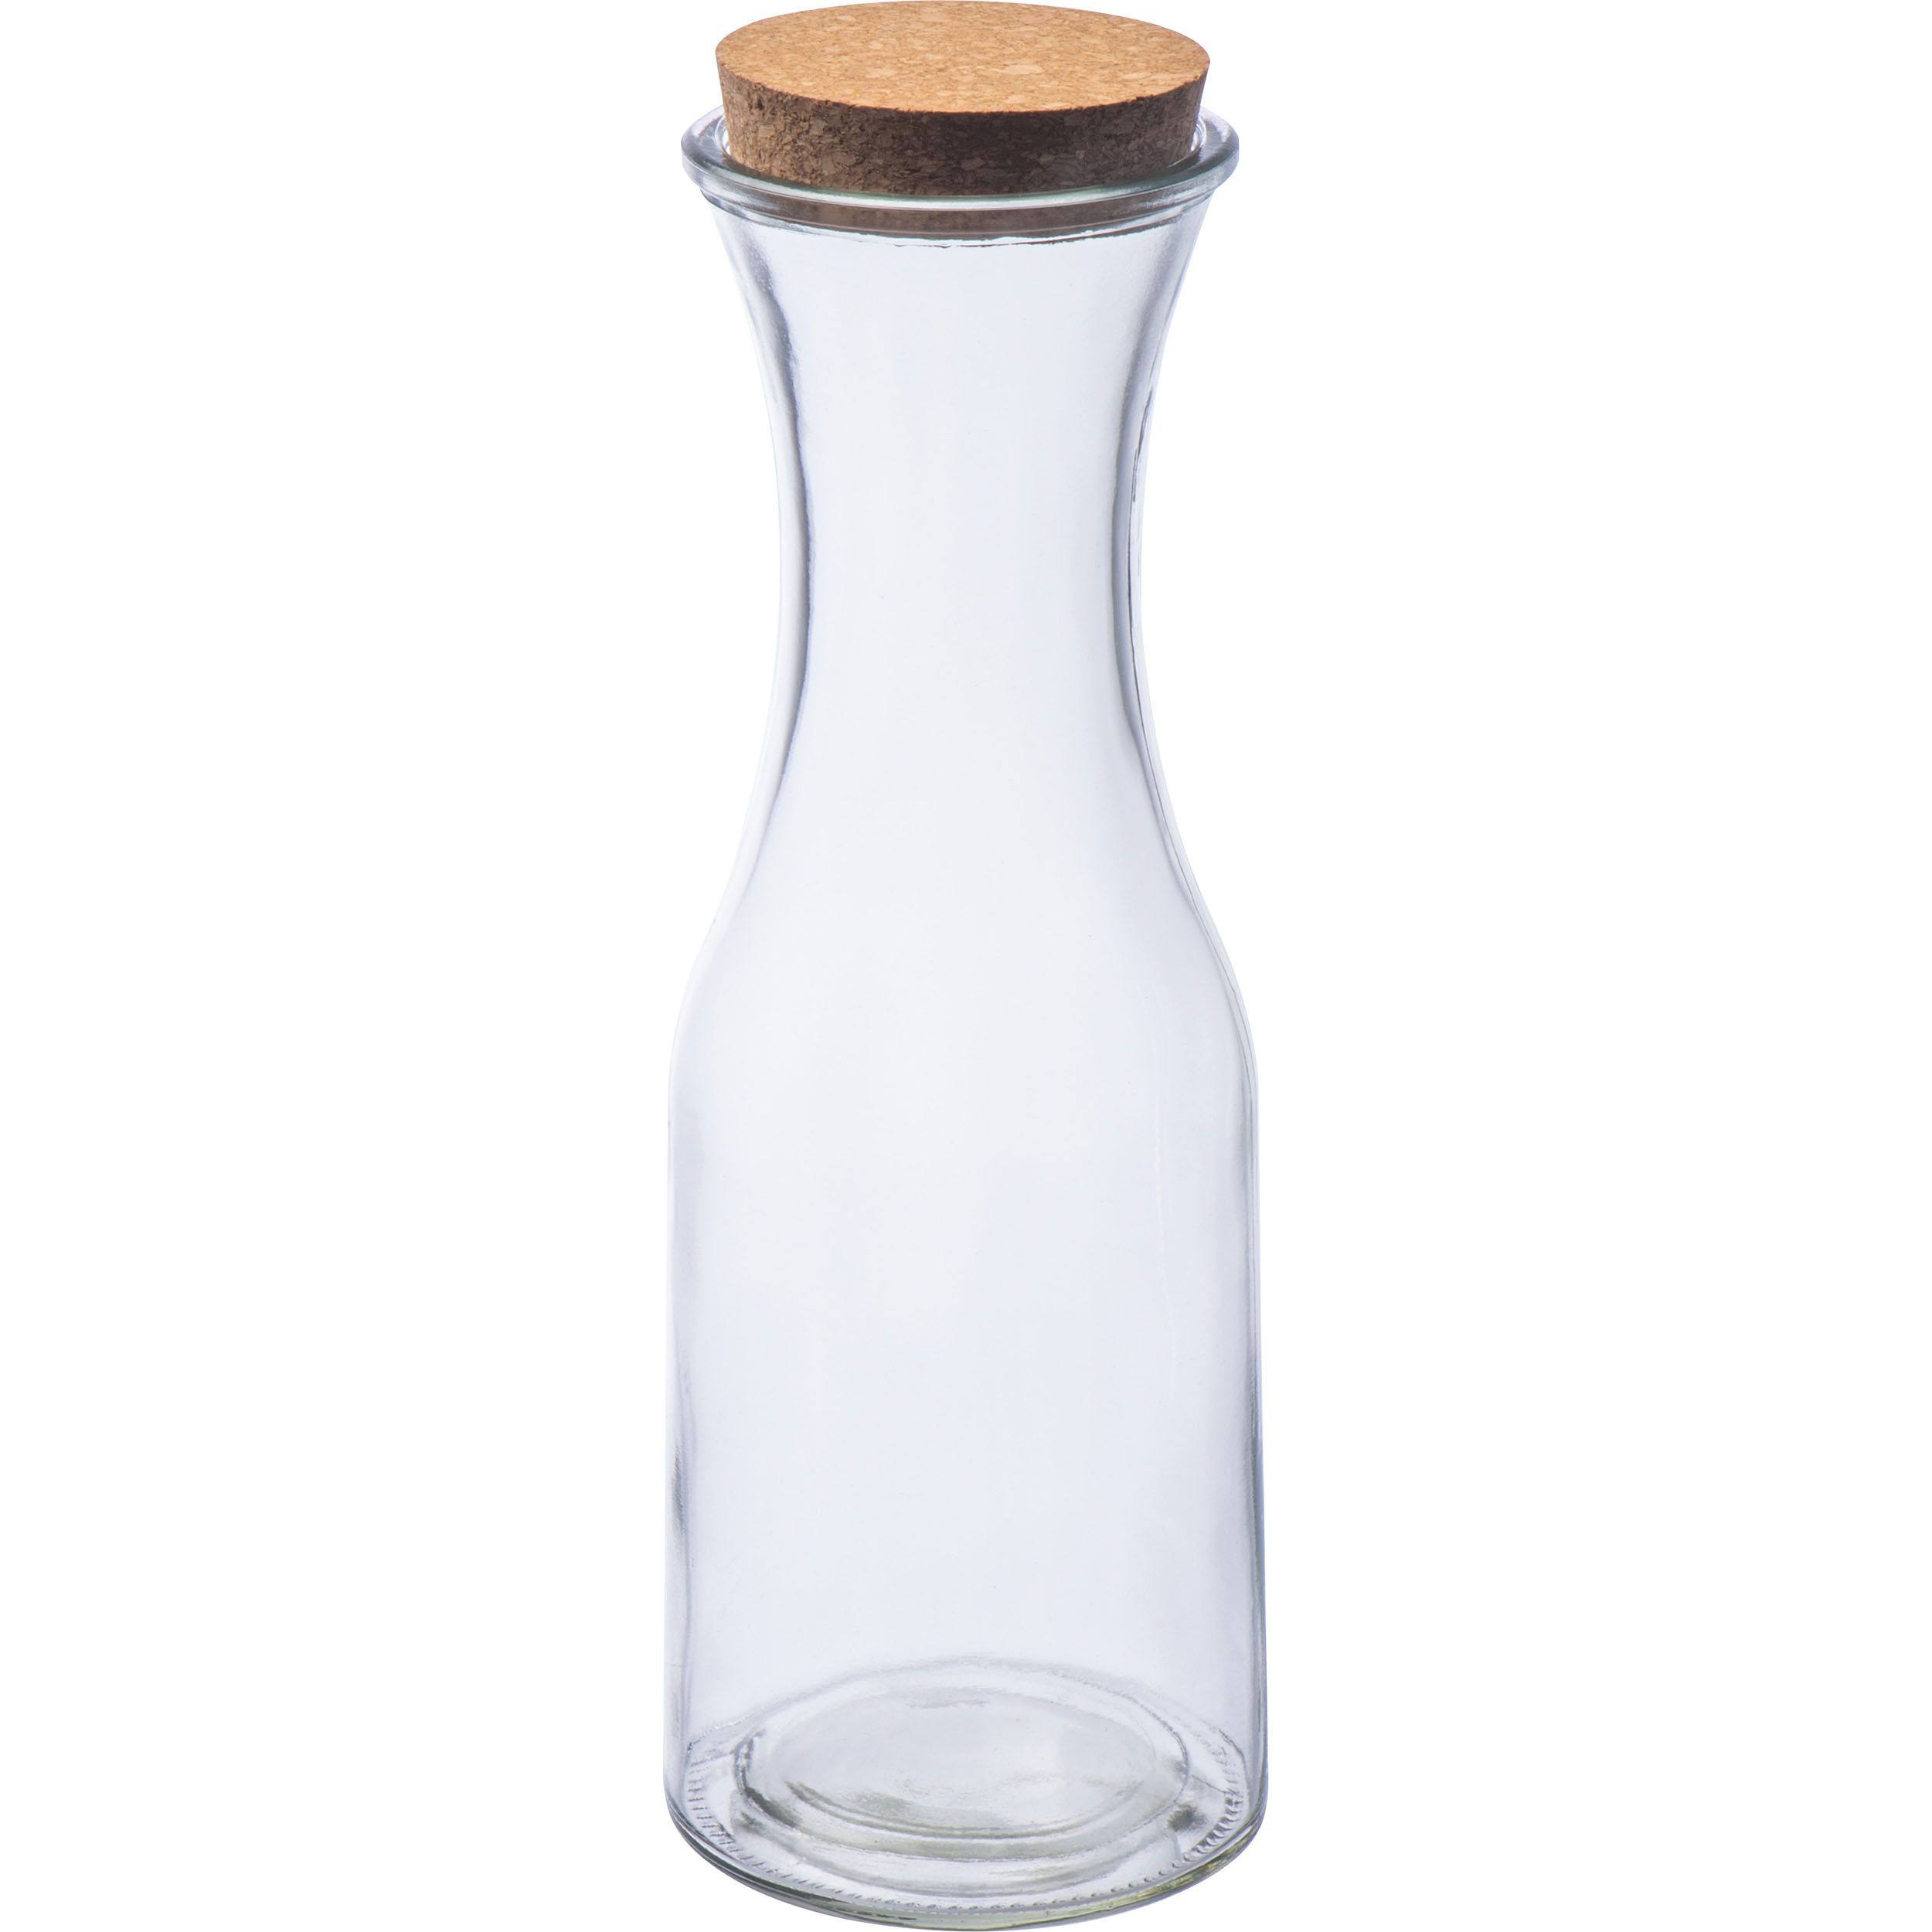 Glasflasche mit Korkdeckel, transparent